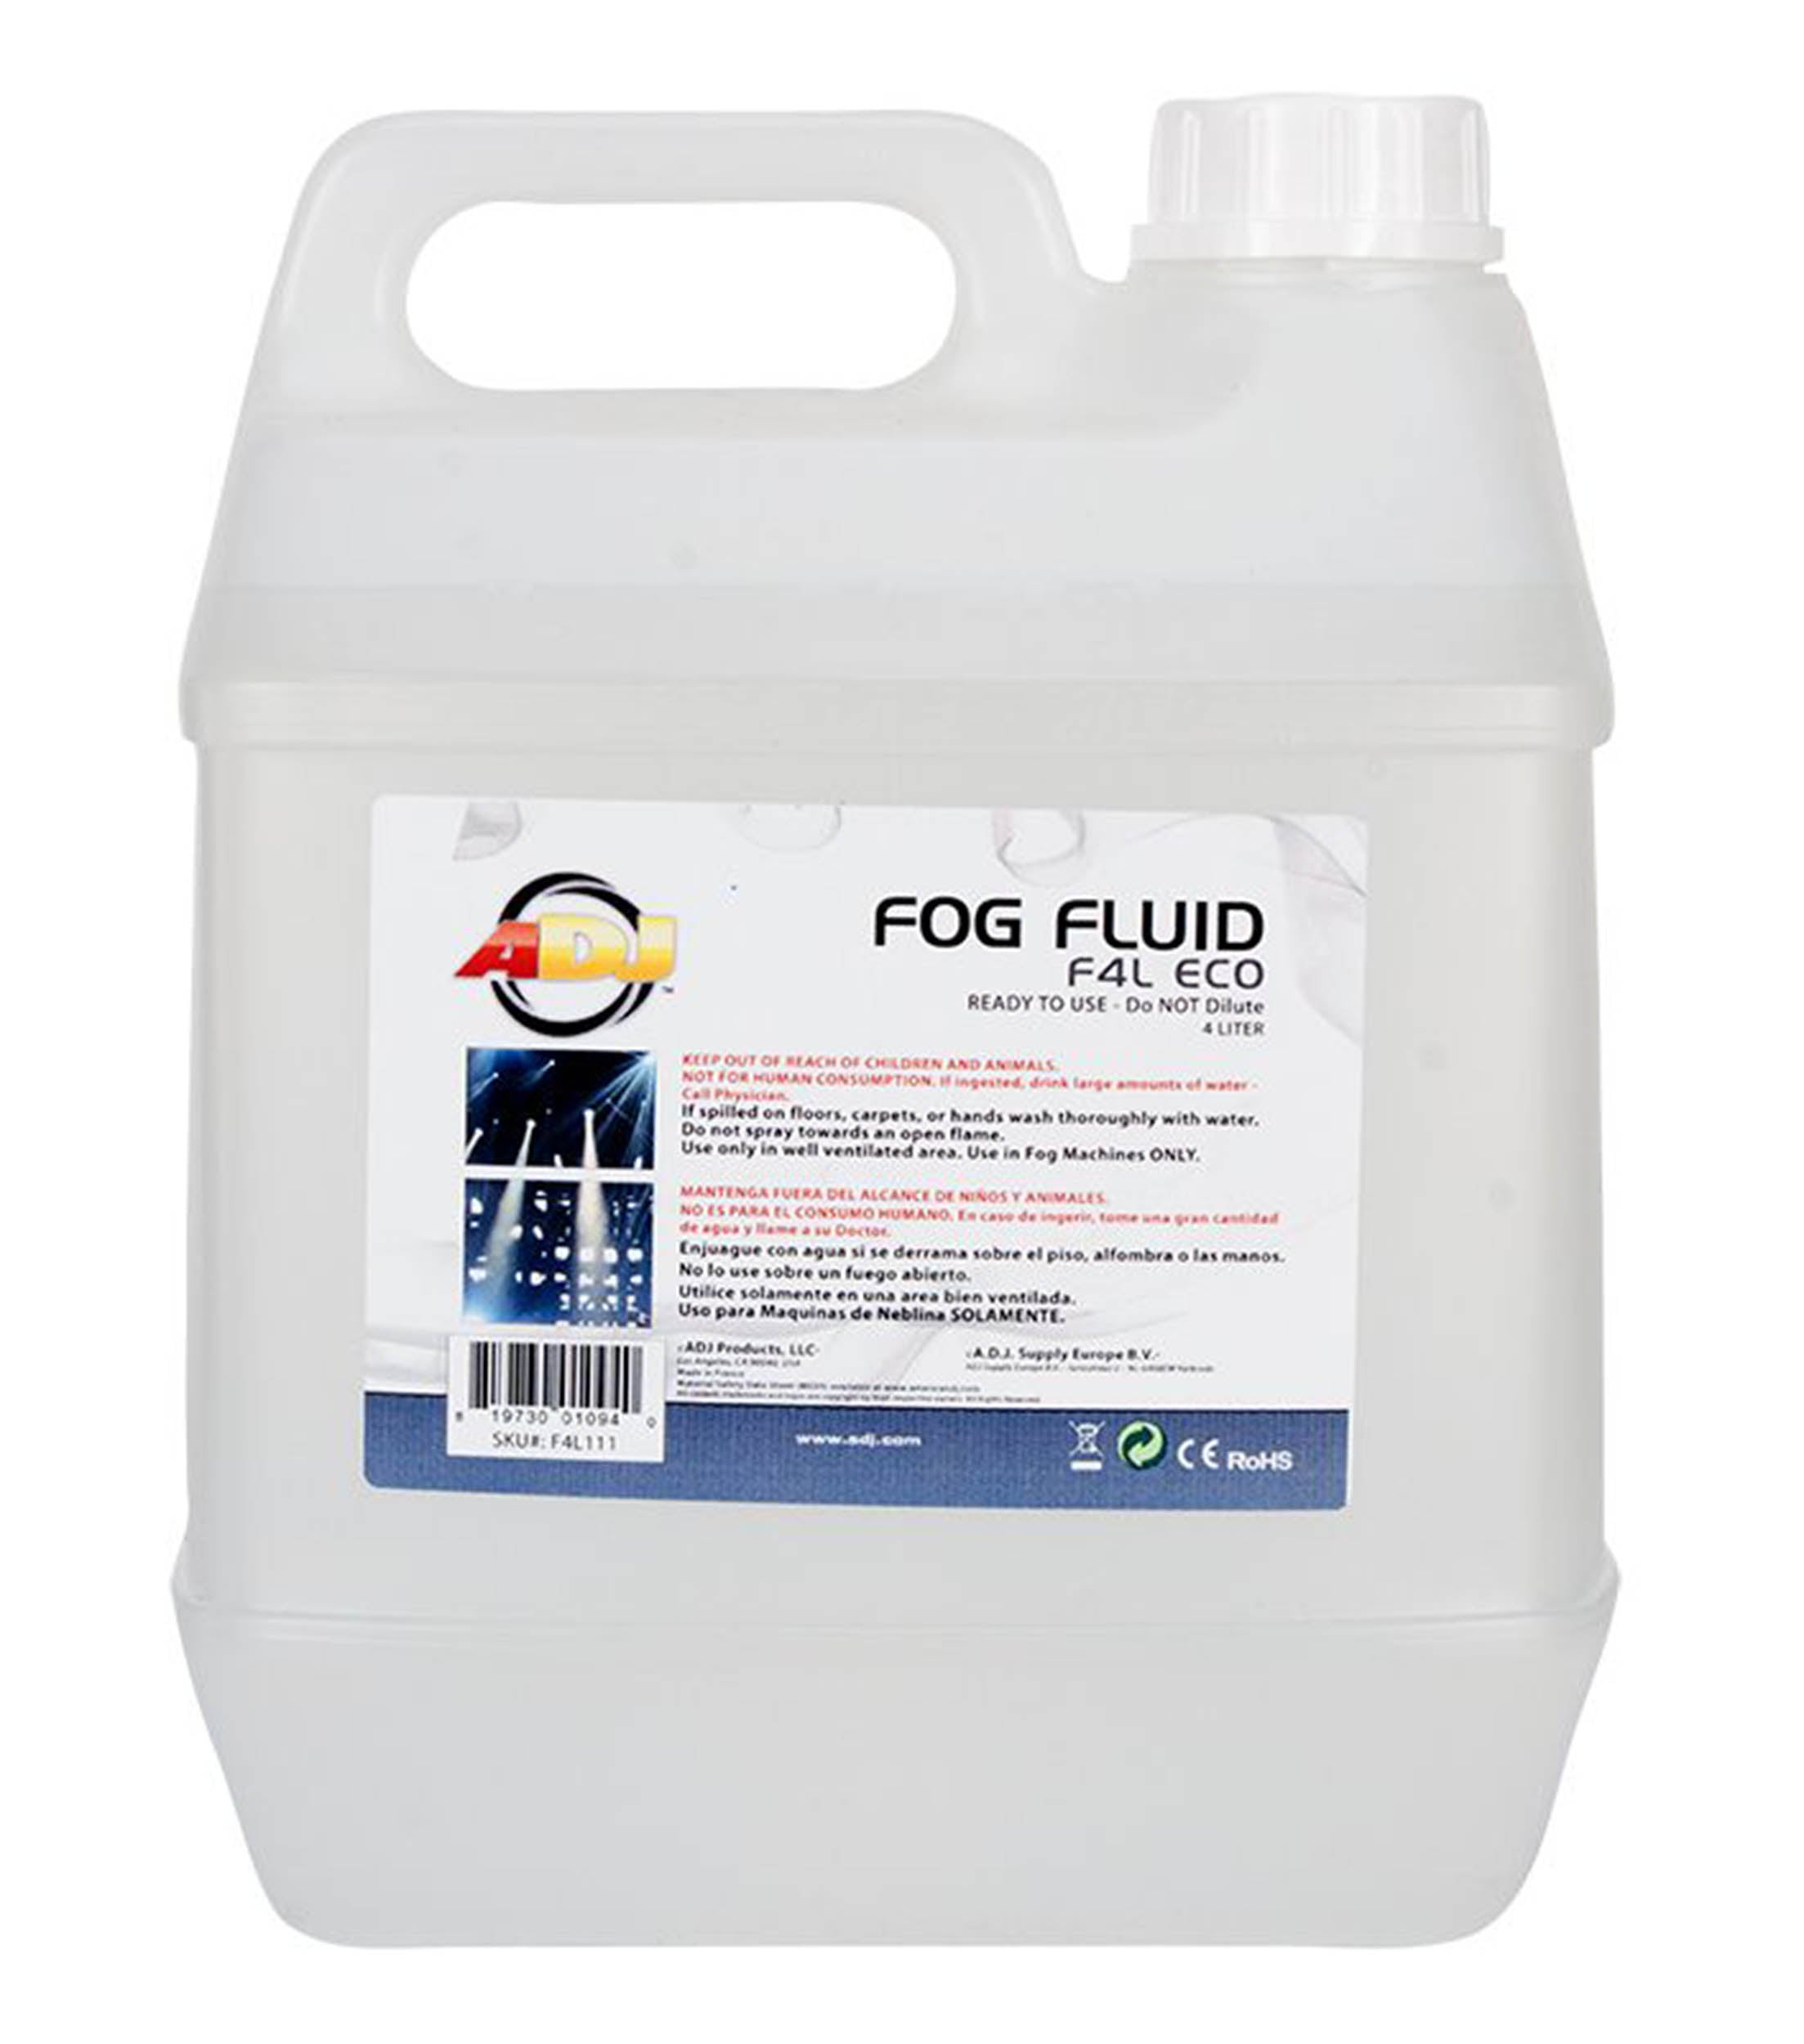 ADJ F4L ECO, Eco Fog Fluid - 4L by ADJ